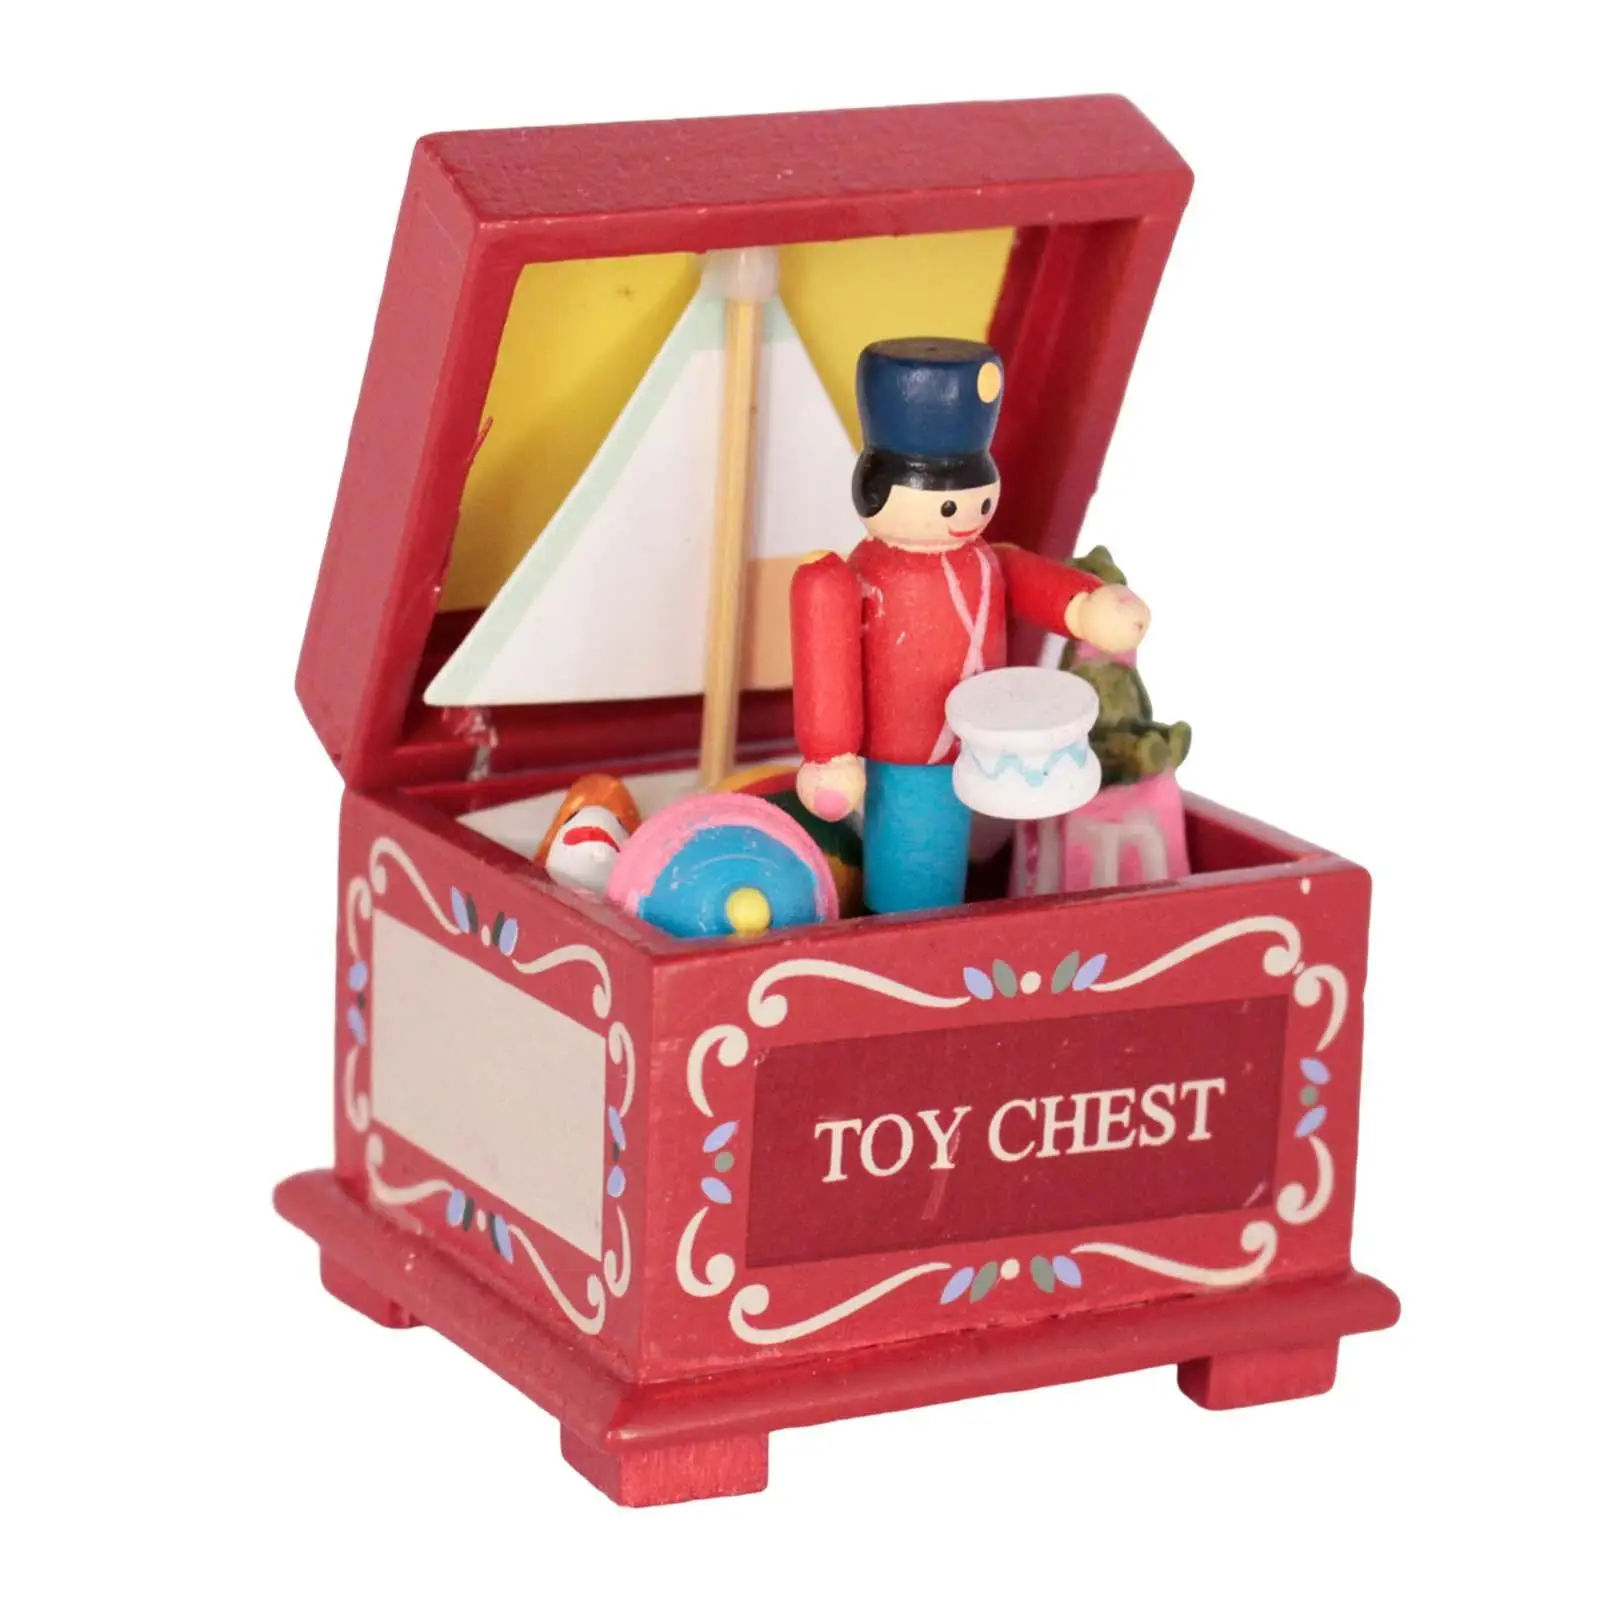 

1:12 игрушечный кукольный домик, грудь, полная игрушка, сканер, фигурка, проект ручной работы для кукольного домика, игрушки